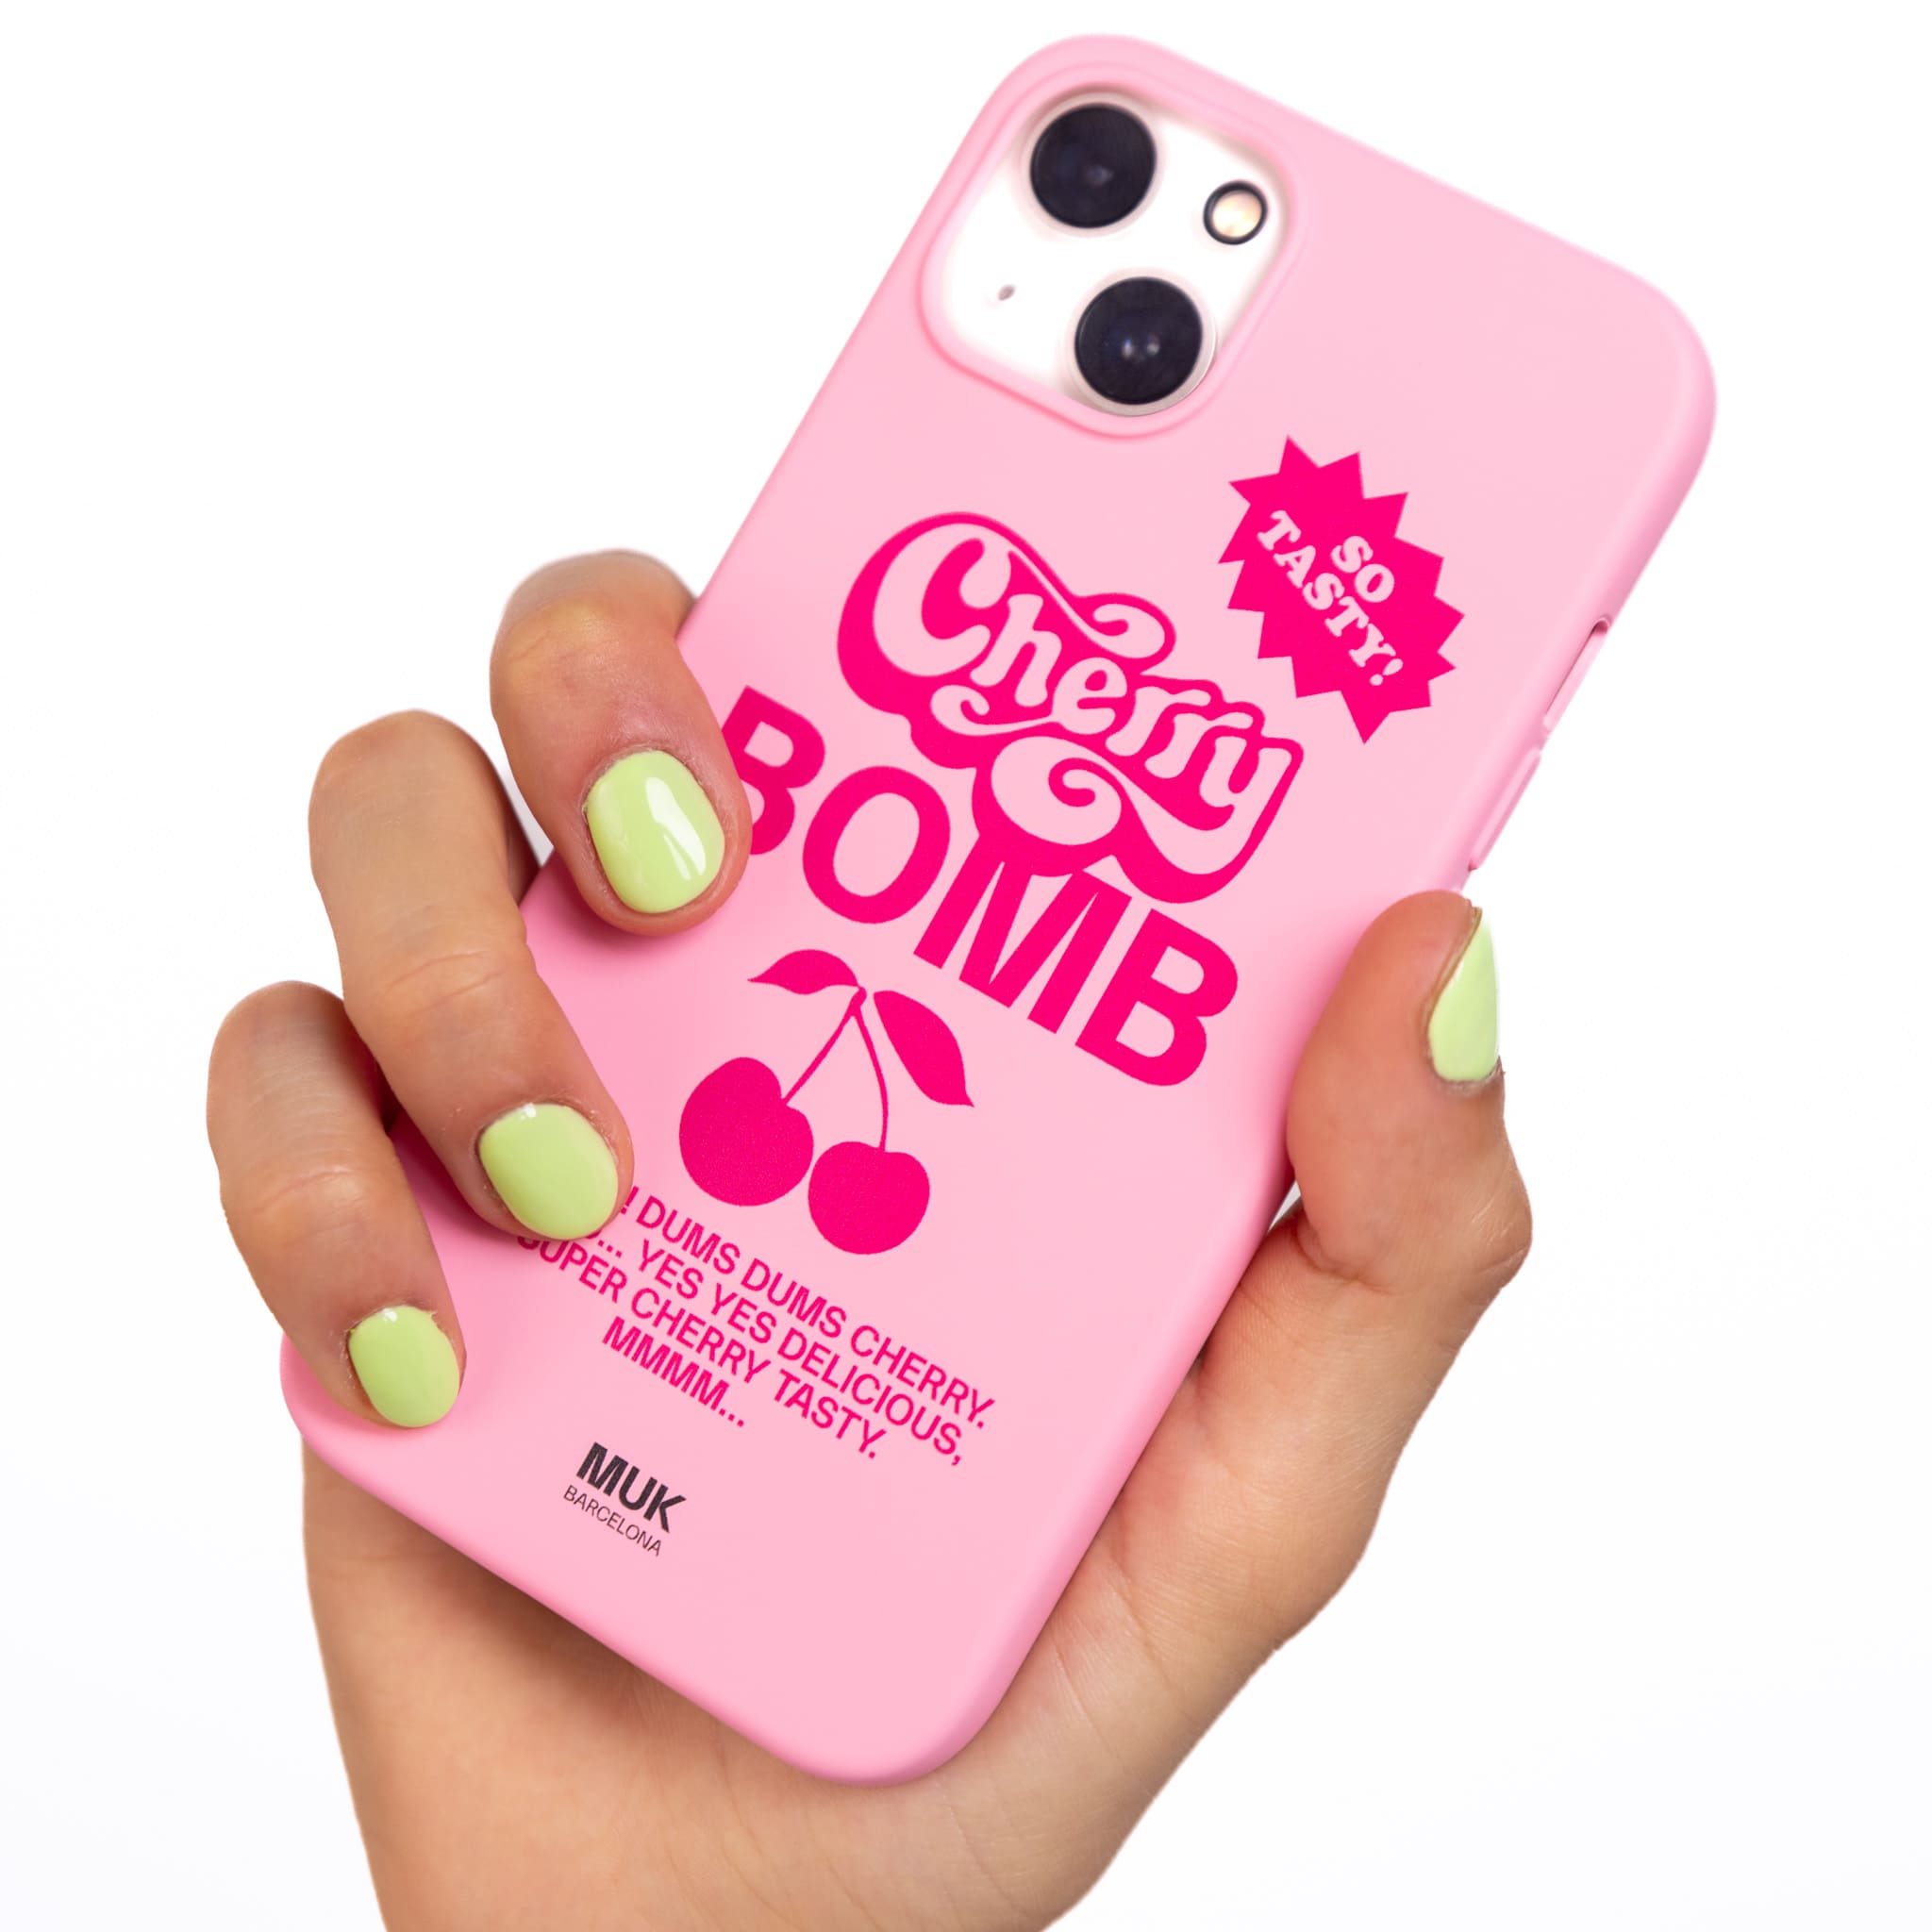 Funda de móvil TPU rosa con diseño de cerezas y frase "Cherry bomb" en color rosa fucsia.
